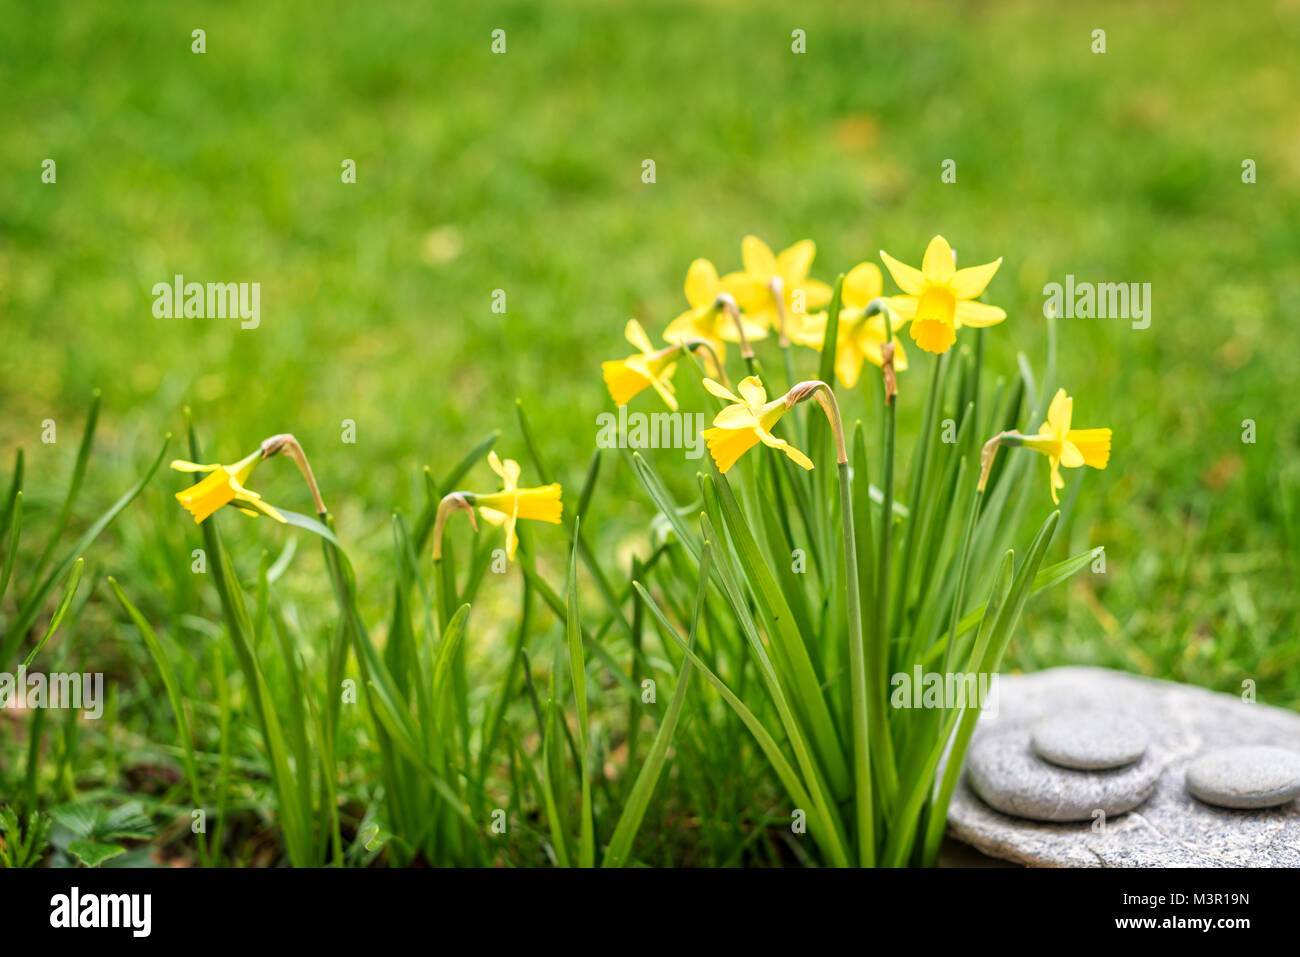 Narzissen in der Nähe, in einem Garten, Frühjahr Konzept Stockfoto